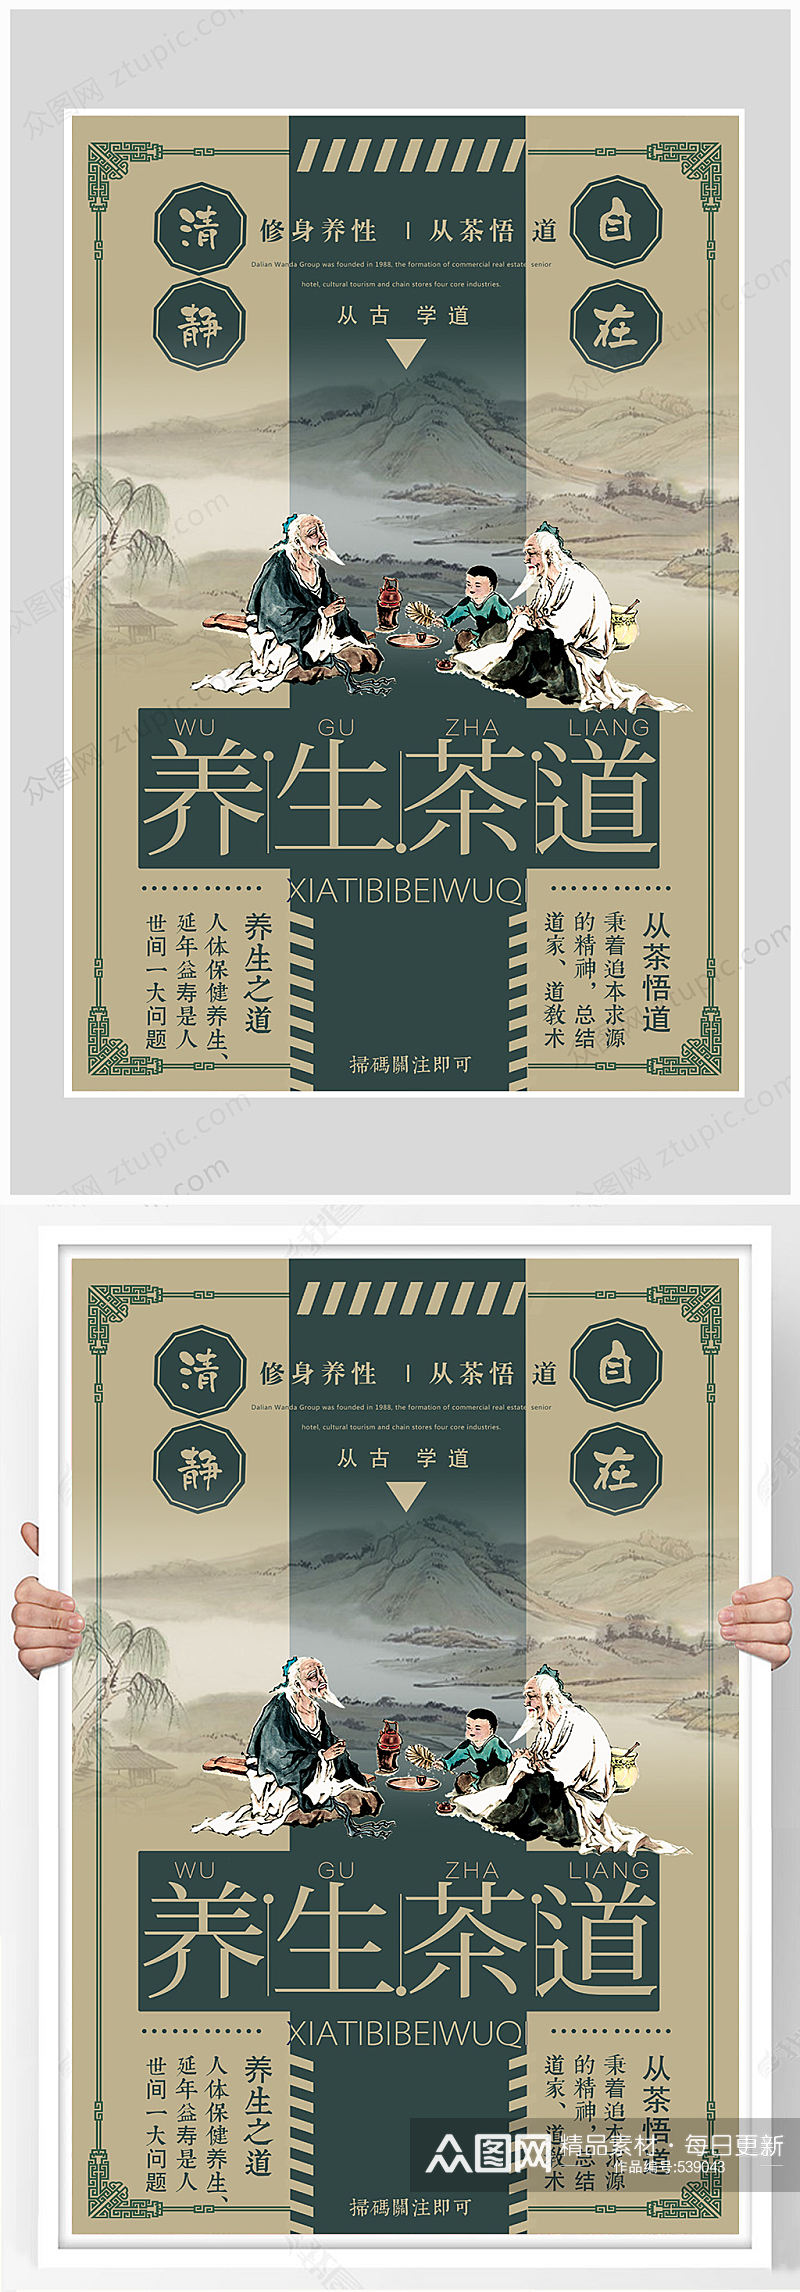 中国风传统茶道海报素材